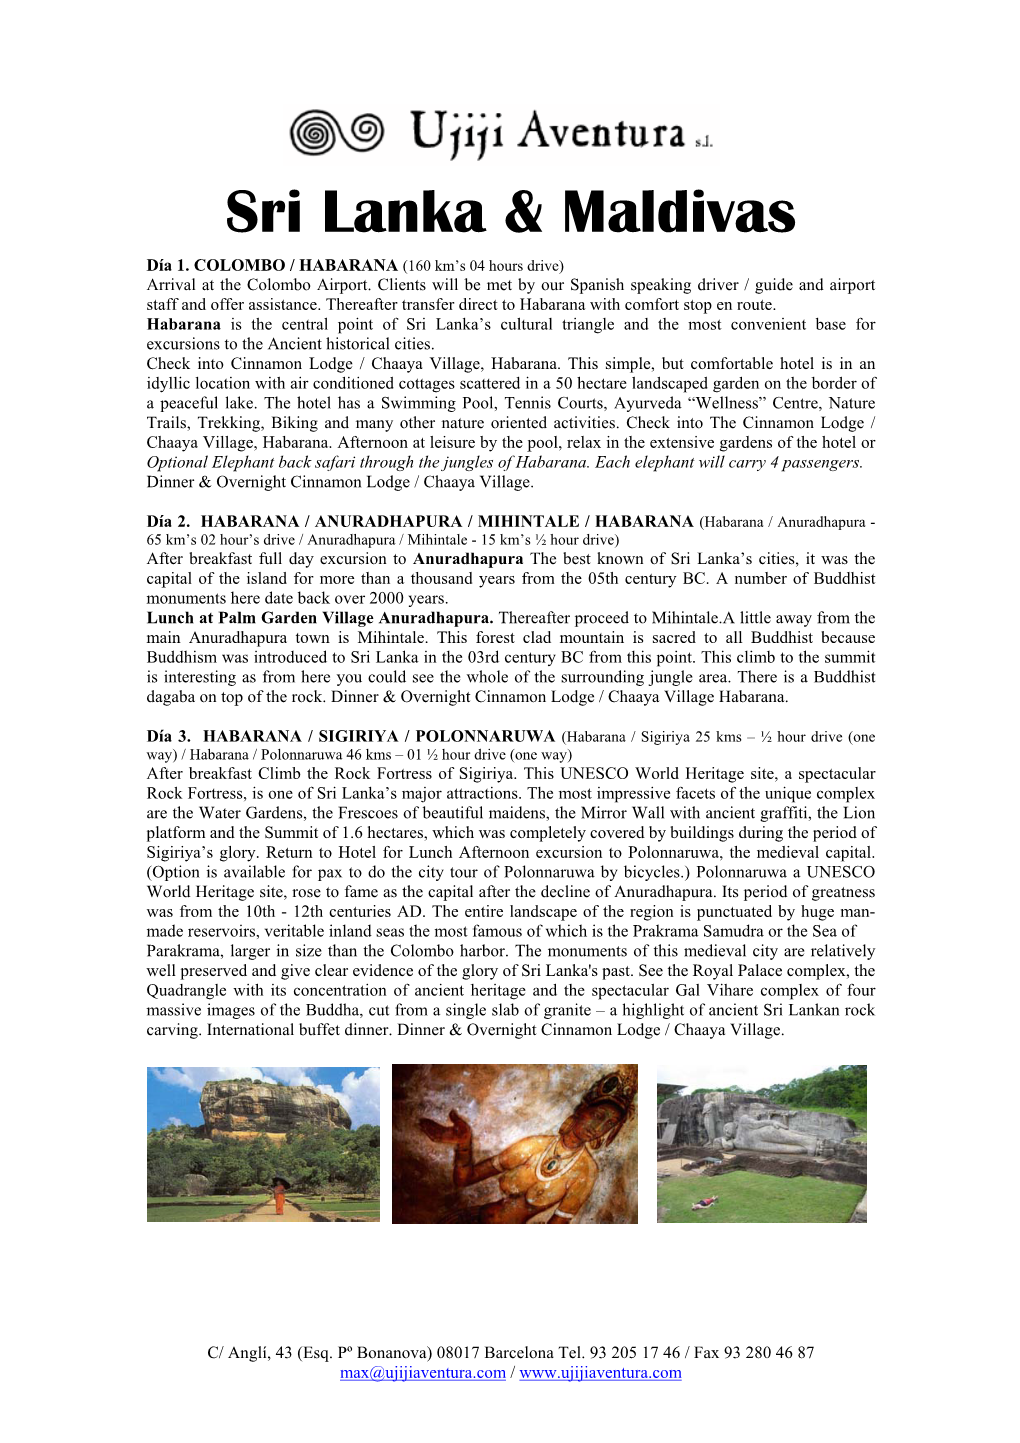 Sri Lanka & Maldivas